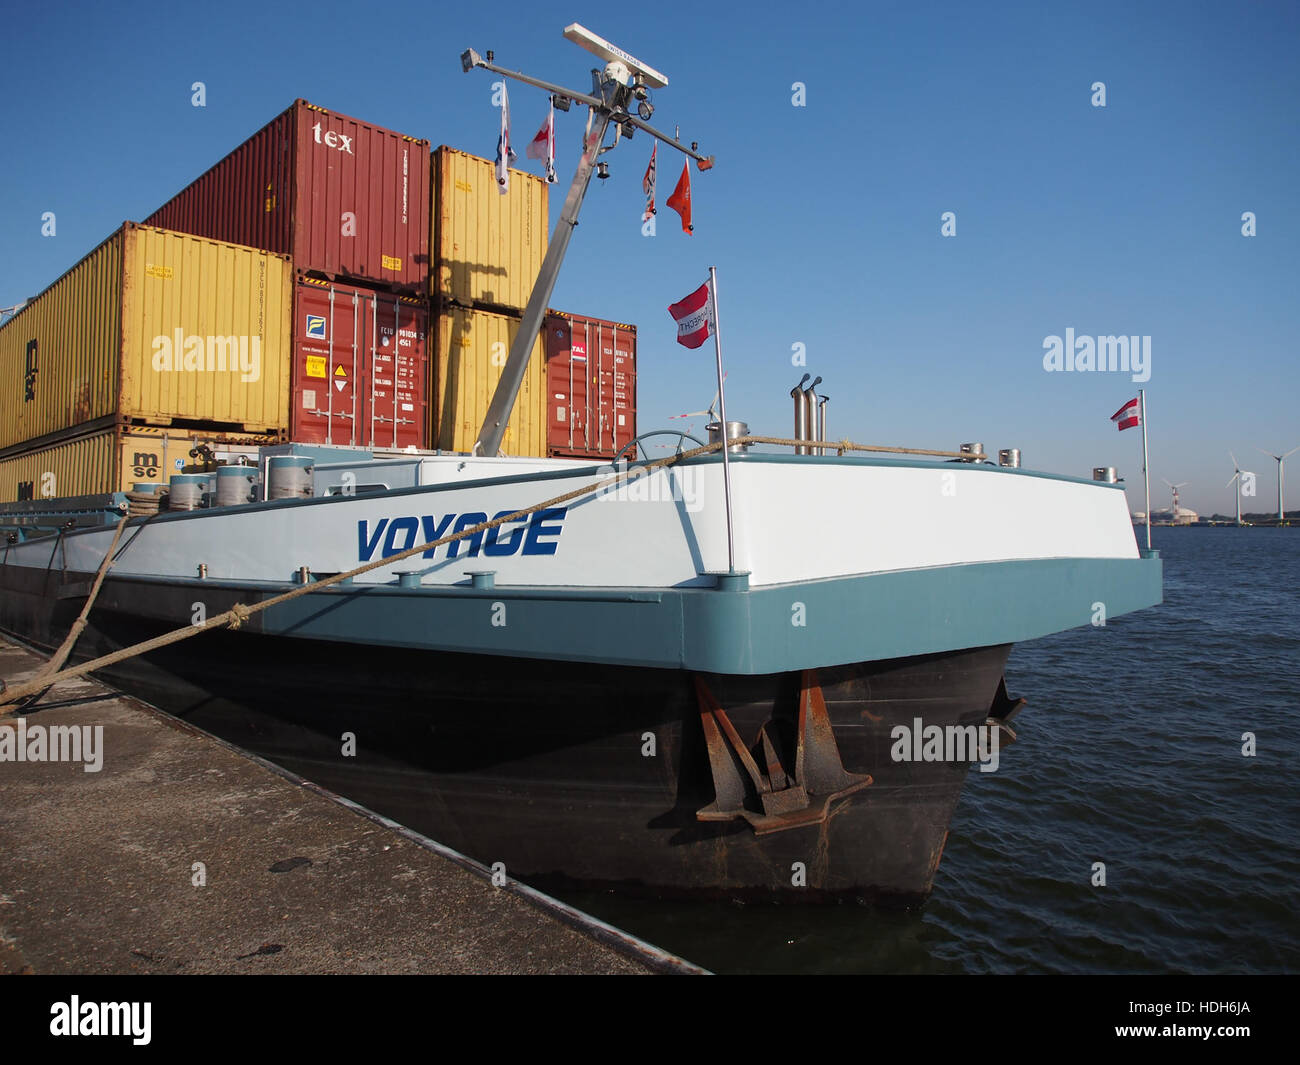 Voyage (1997), navire de proue, Port d'Anvers Banque D'Images